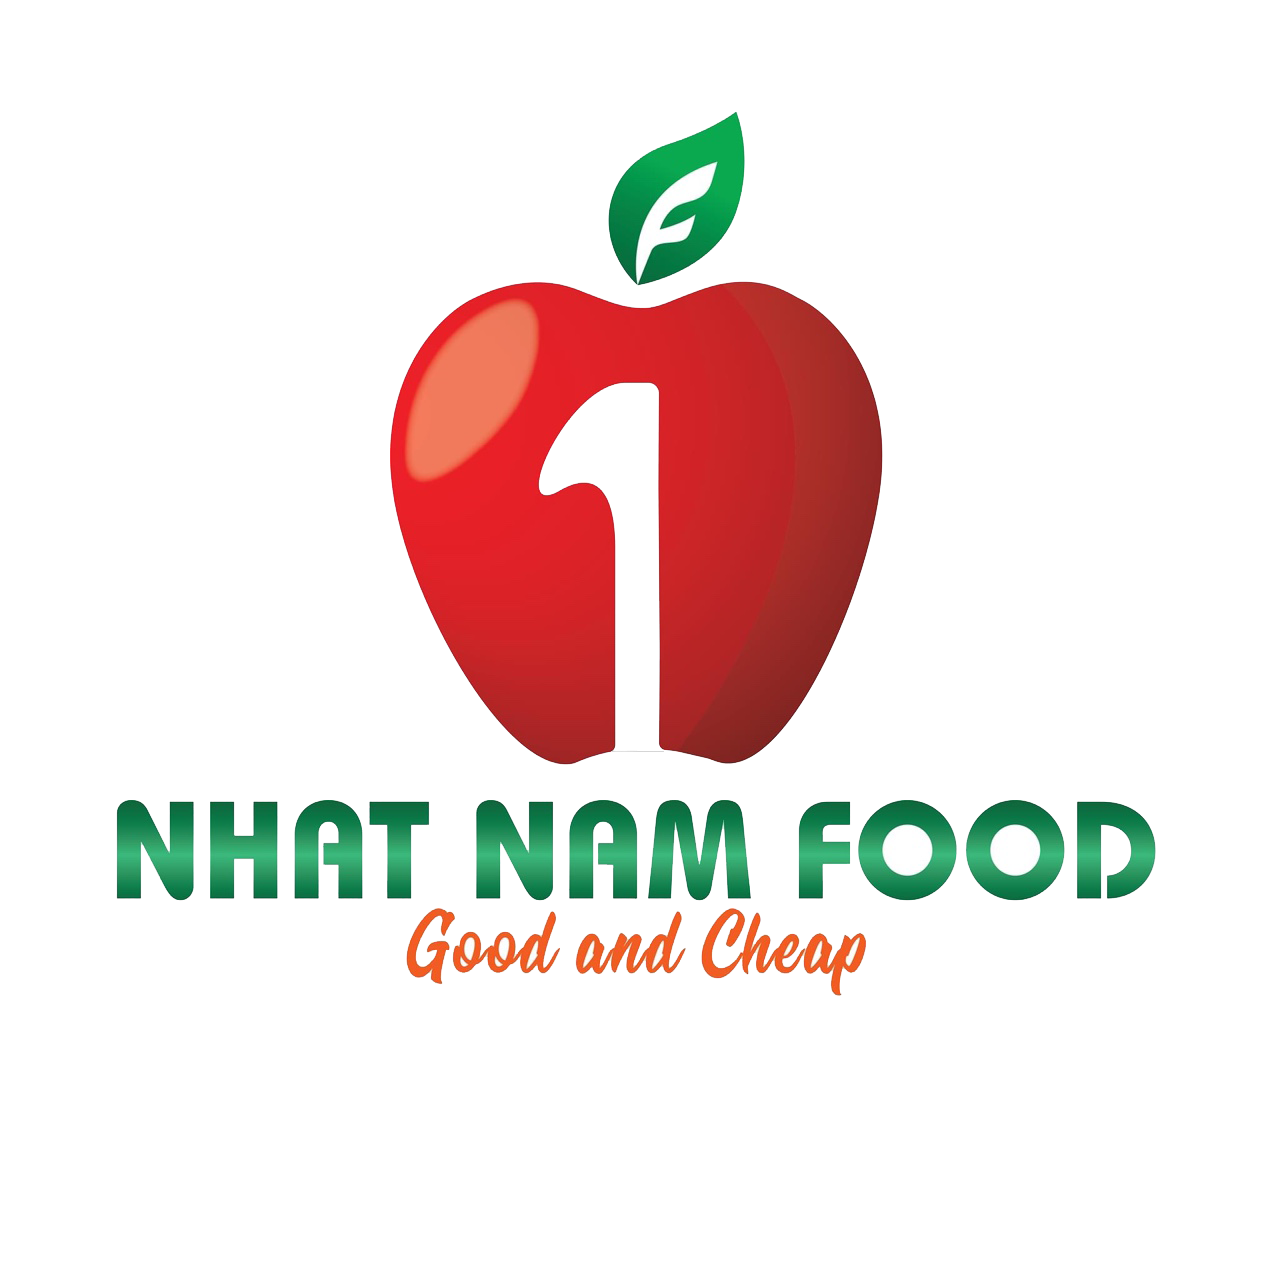 Ý nghĩa của Logo và Slogan Nhất Nam Food: Biểu tượng quả táo đại diện cho trái cây nhập khẩu, màu đỏ là màu của trái cây đã tới độ chín mọng; đỏ và xanh tượng trưng cho sự tươi mát, xanh sạch cam kết chất lượng và tốt cho sức khỏe. Số 1 đại diện cho khao khát chiếm lĩnh số 1 trên thị trường xuất nhập khẩu; Nhất Nam Food vừa là tên công ty, vừa thể hiện là doanh nghiệp hàng đầu về mảng trái cây tại Việt Nam có nguồn gốc rõ ràng. “Good and Cheap” là cam kết của công ty mang đến cho khách hàng những trái cây thơm ngon và giá cả hợp lý.